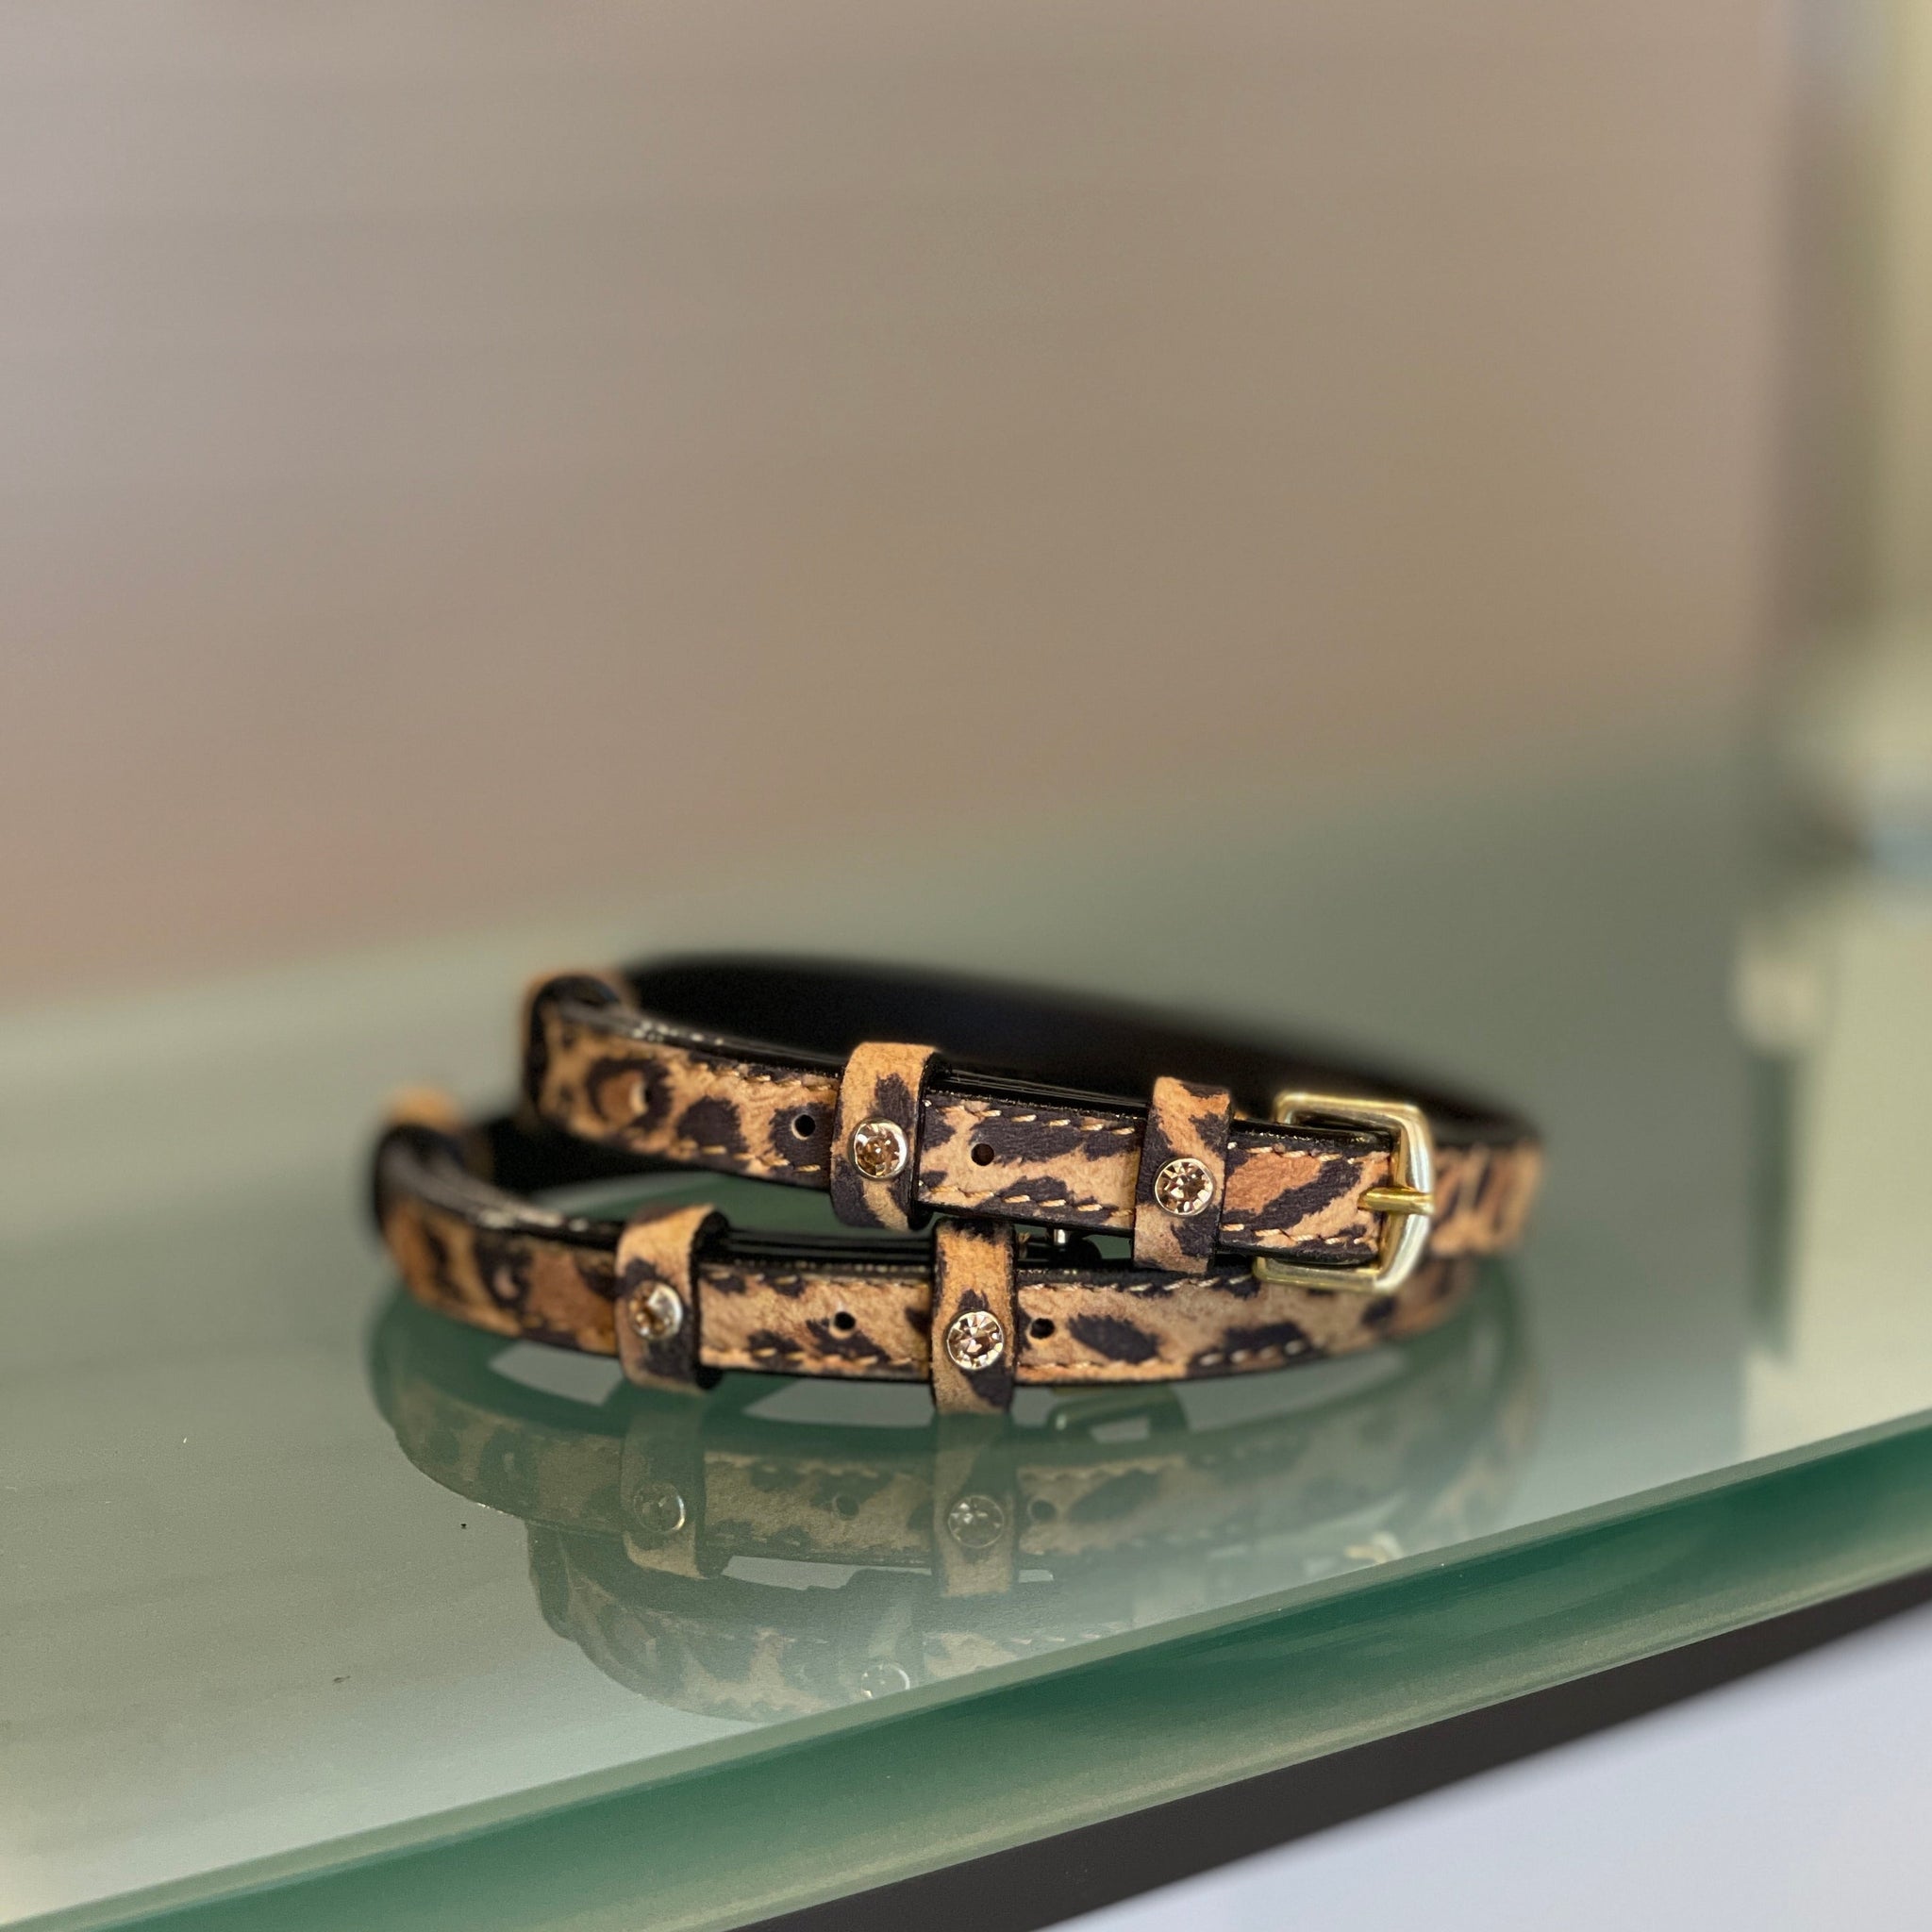 Louis Vuitton leather wrap bracelet  Leather wrap bracelet, Leather wraps,  Wrap bracelet